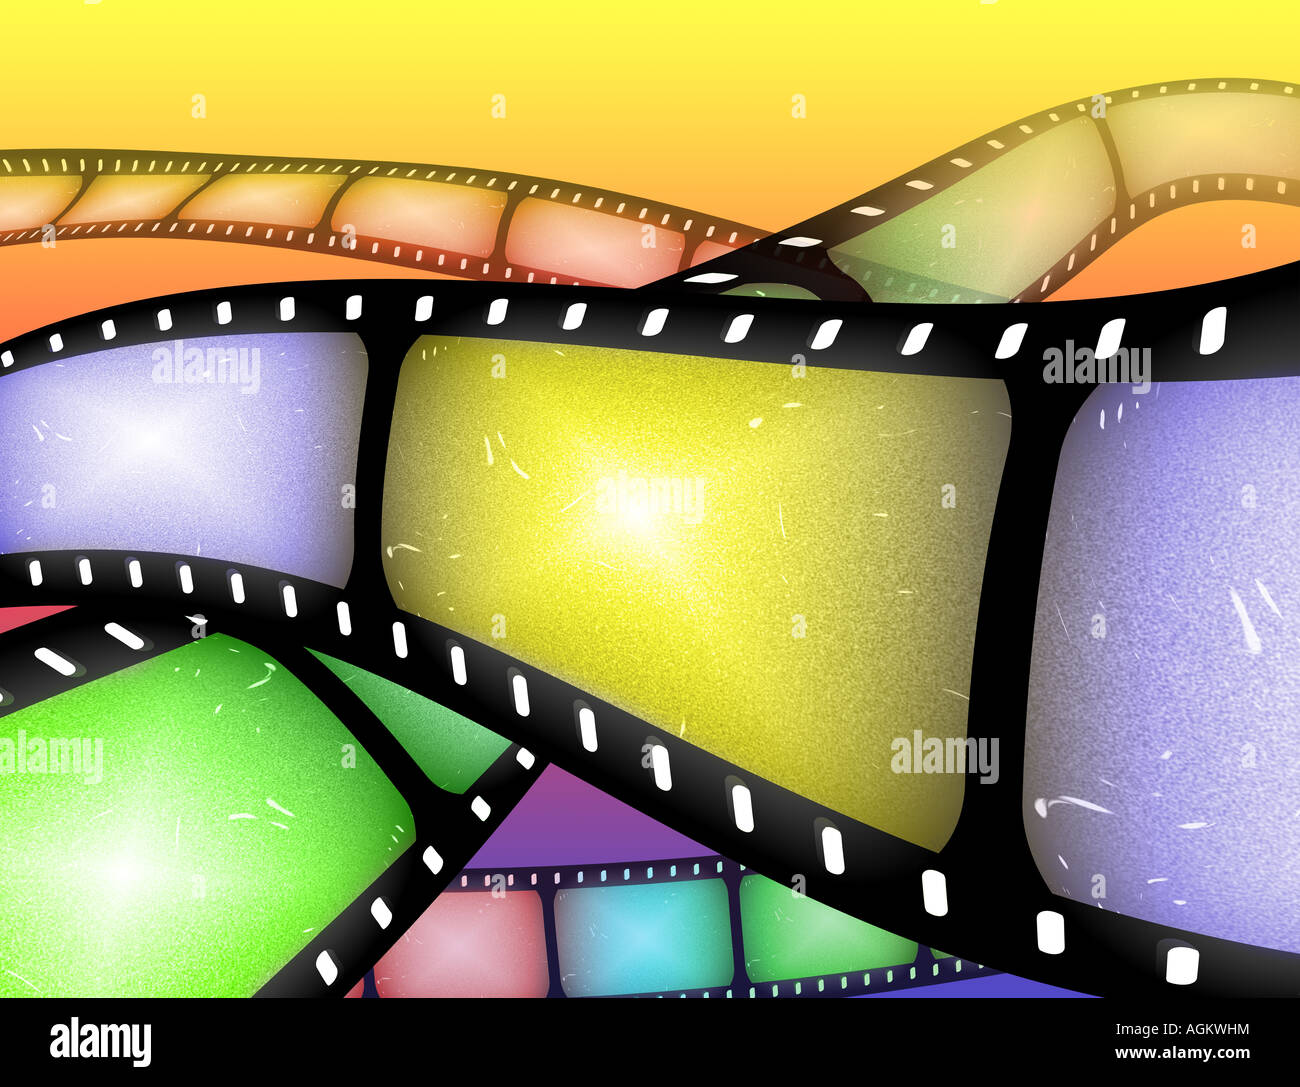 Image abstraite de rouleaux de pellicule ou film reel Banque D'Images